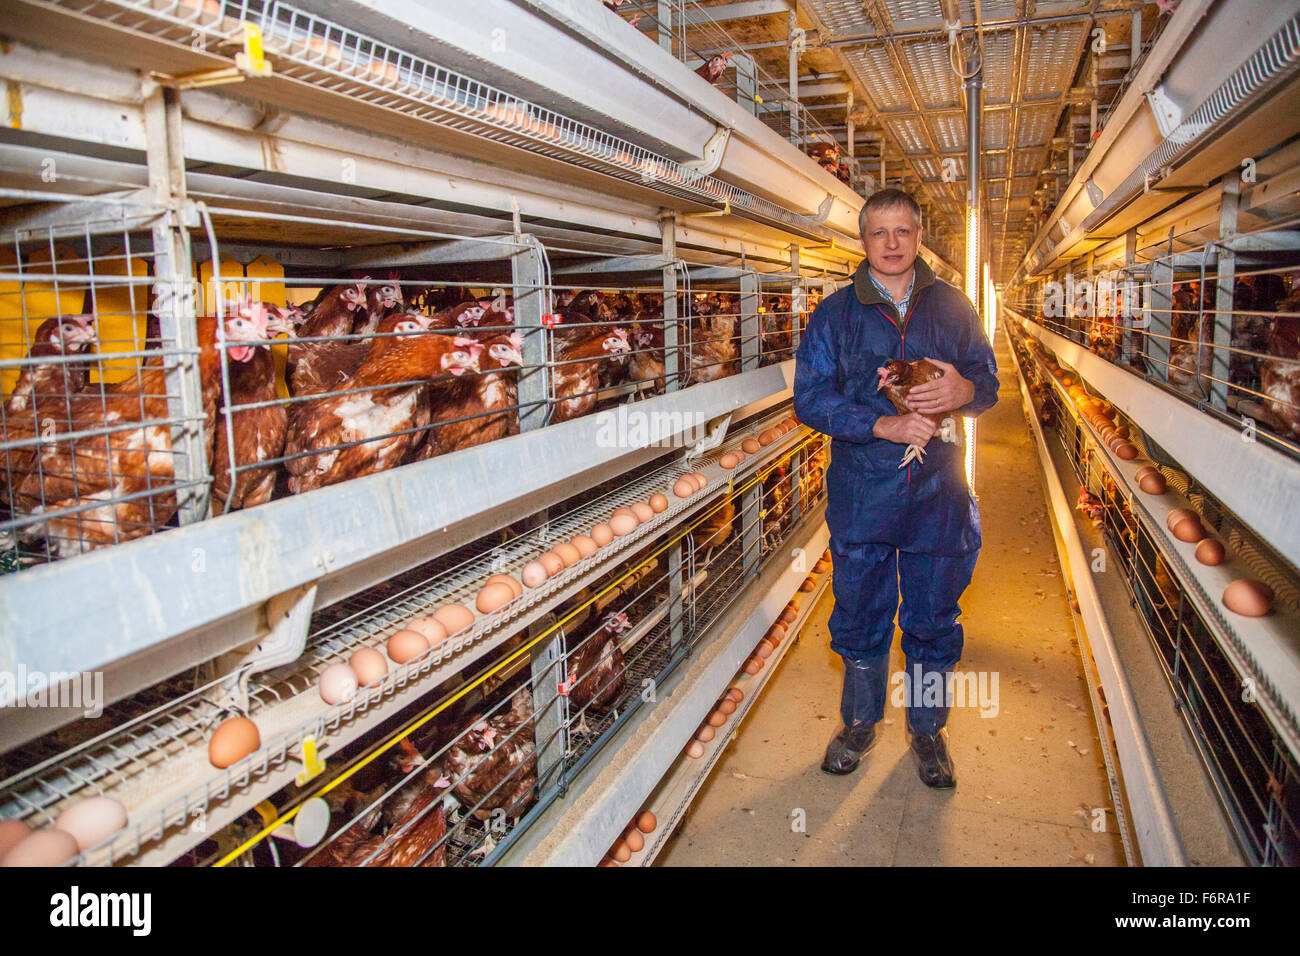 Duncan Priestner, chicken farmer. Stock Photo